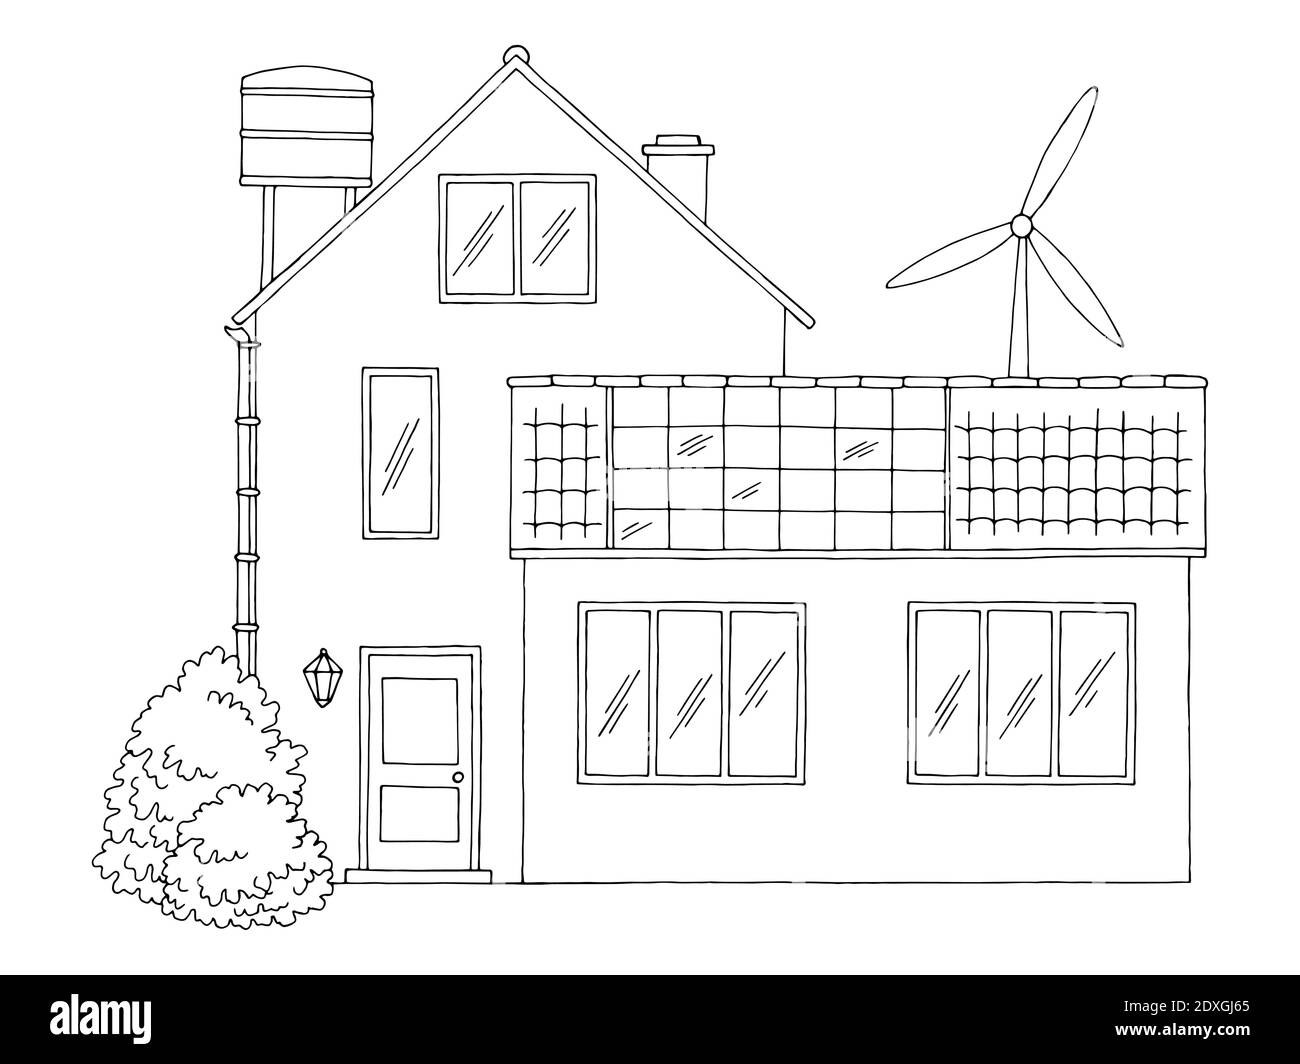 Eco Haus außen Gebäude Grafik schwarz weiß Skizze Illustration Vektor Stock Vektor